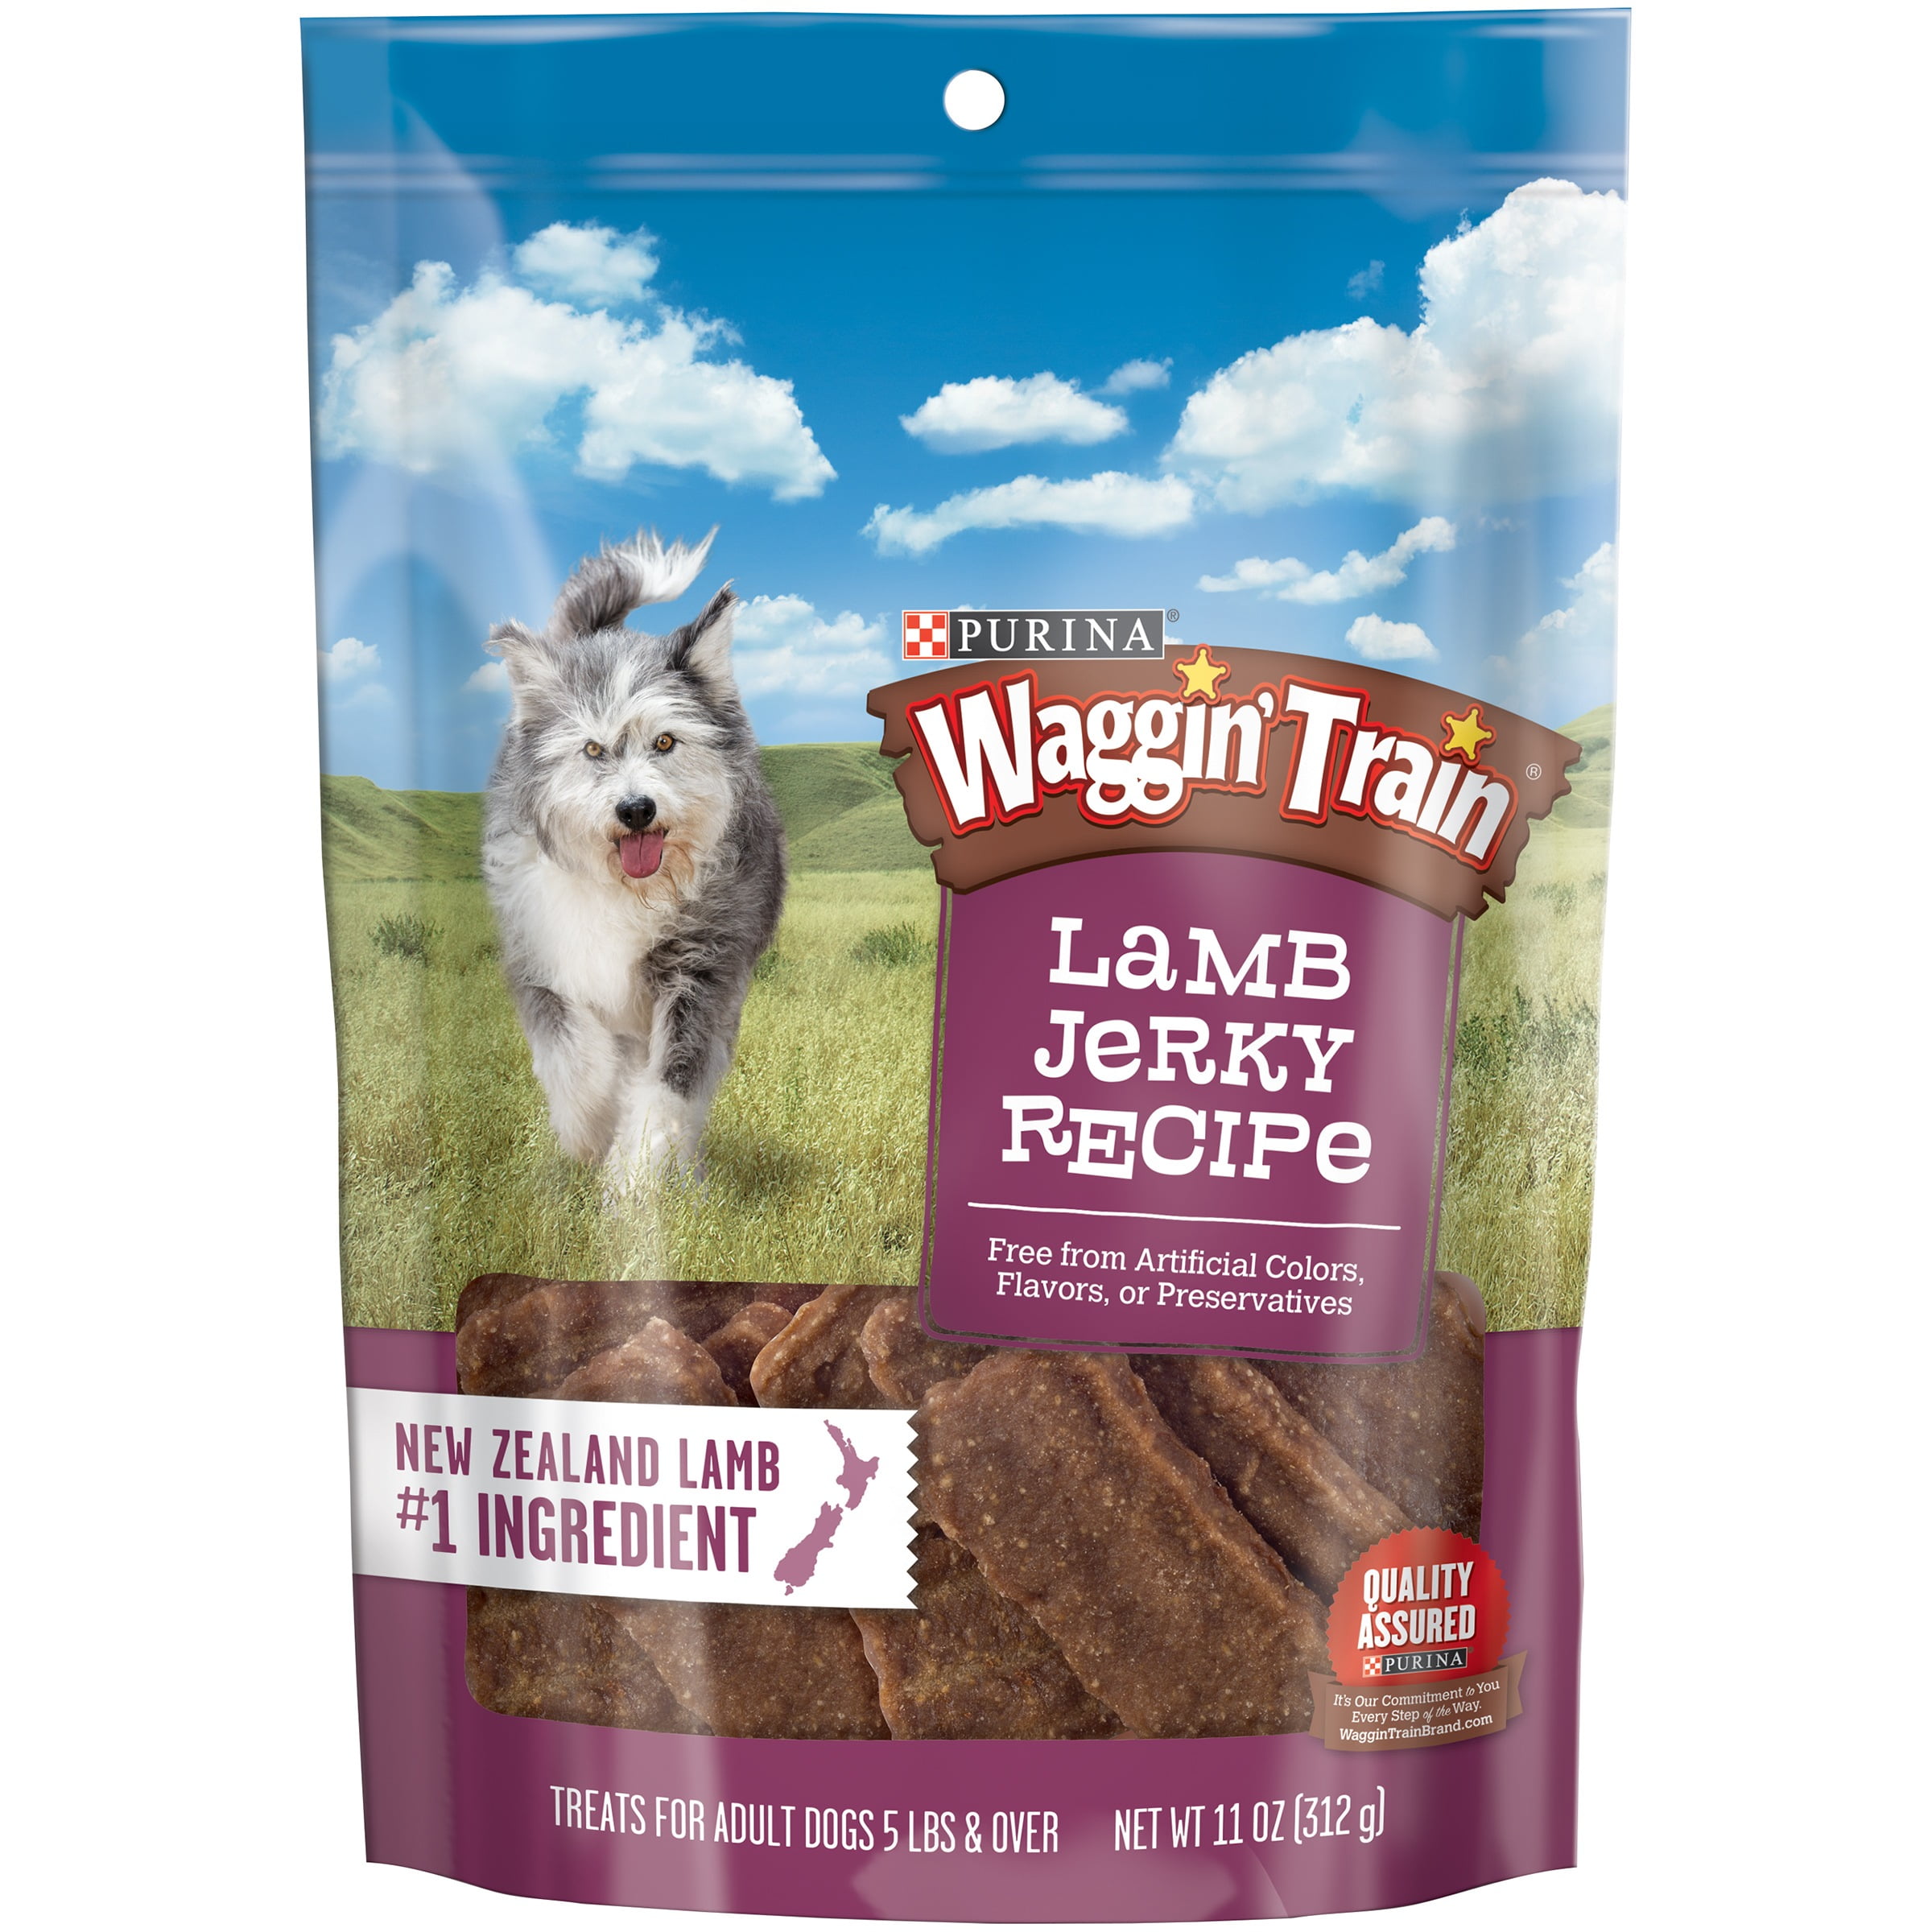 lamb jerky treats for dogs